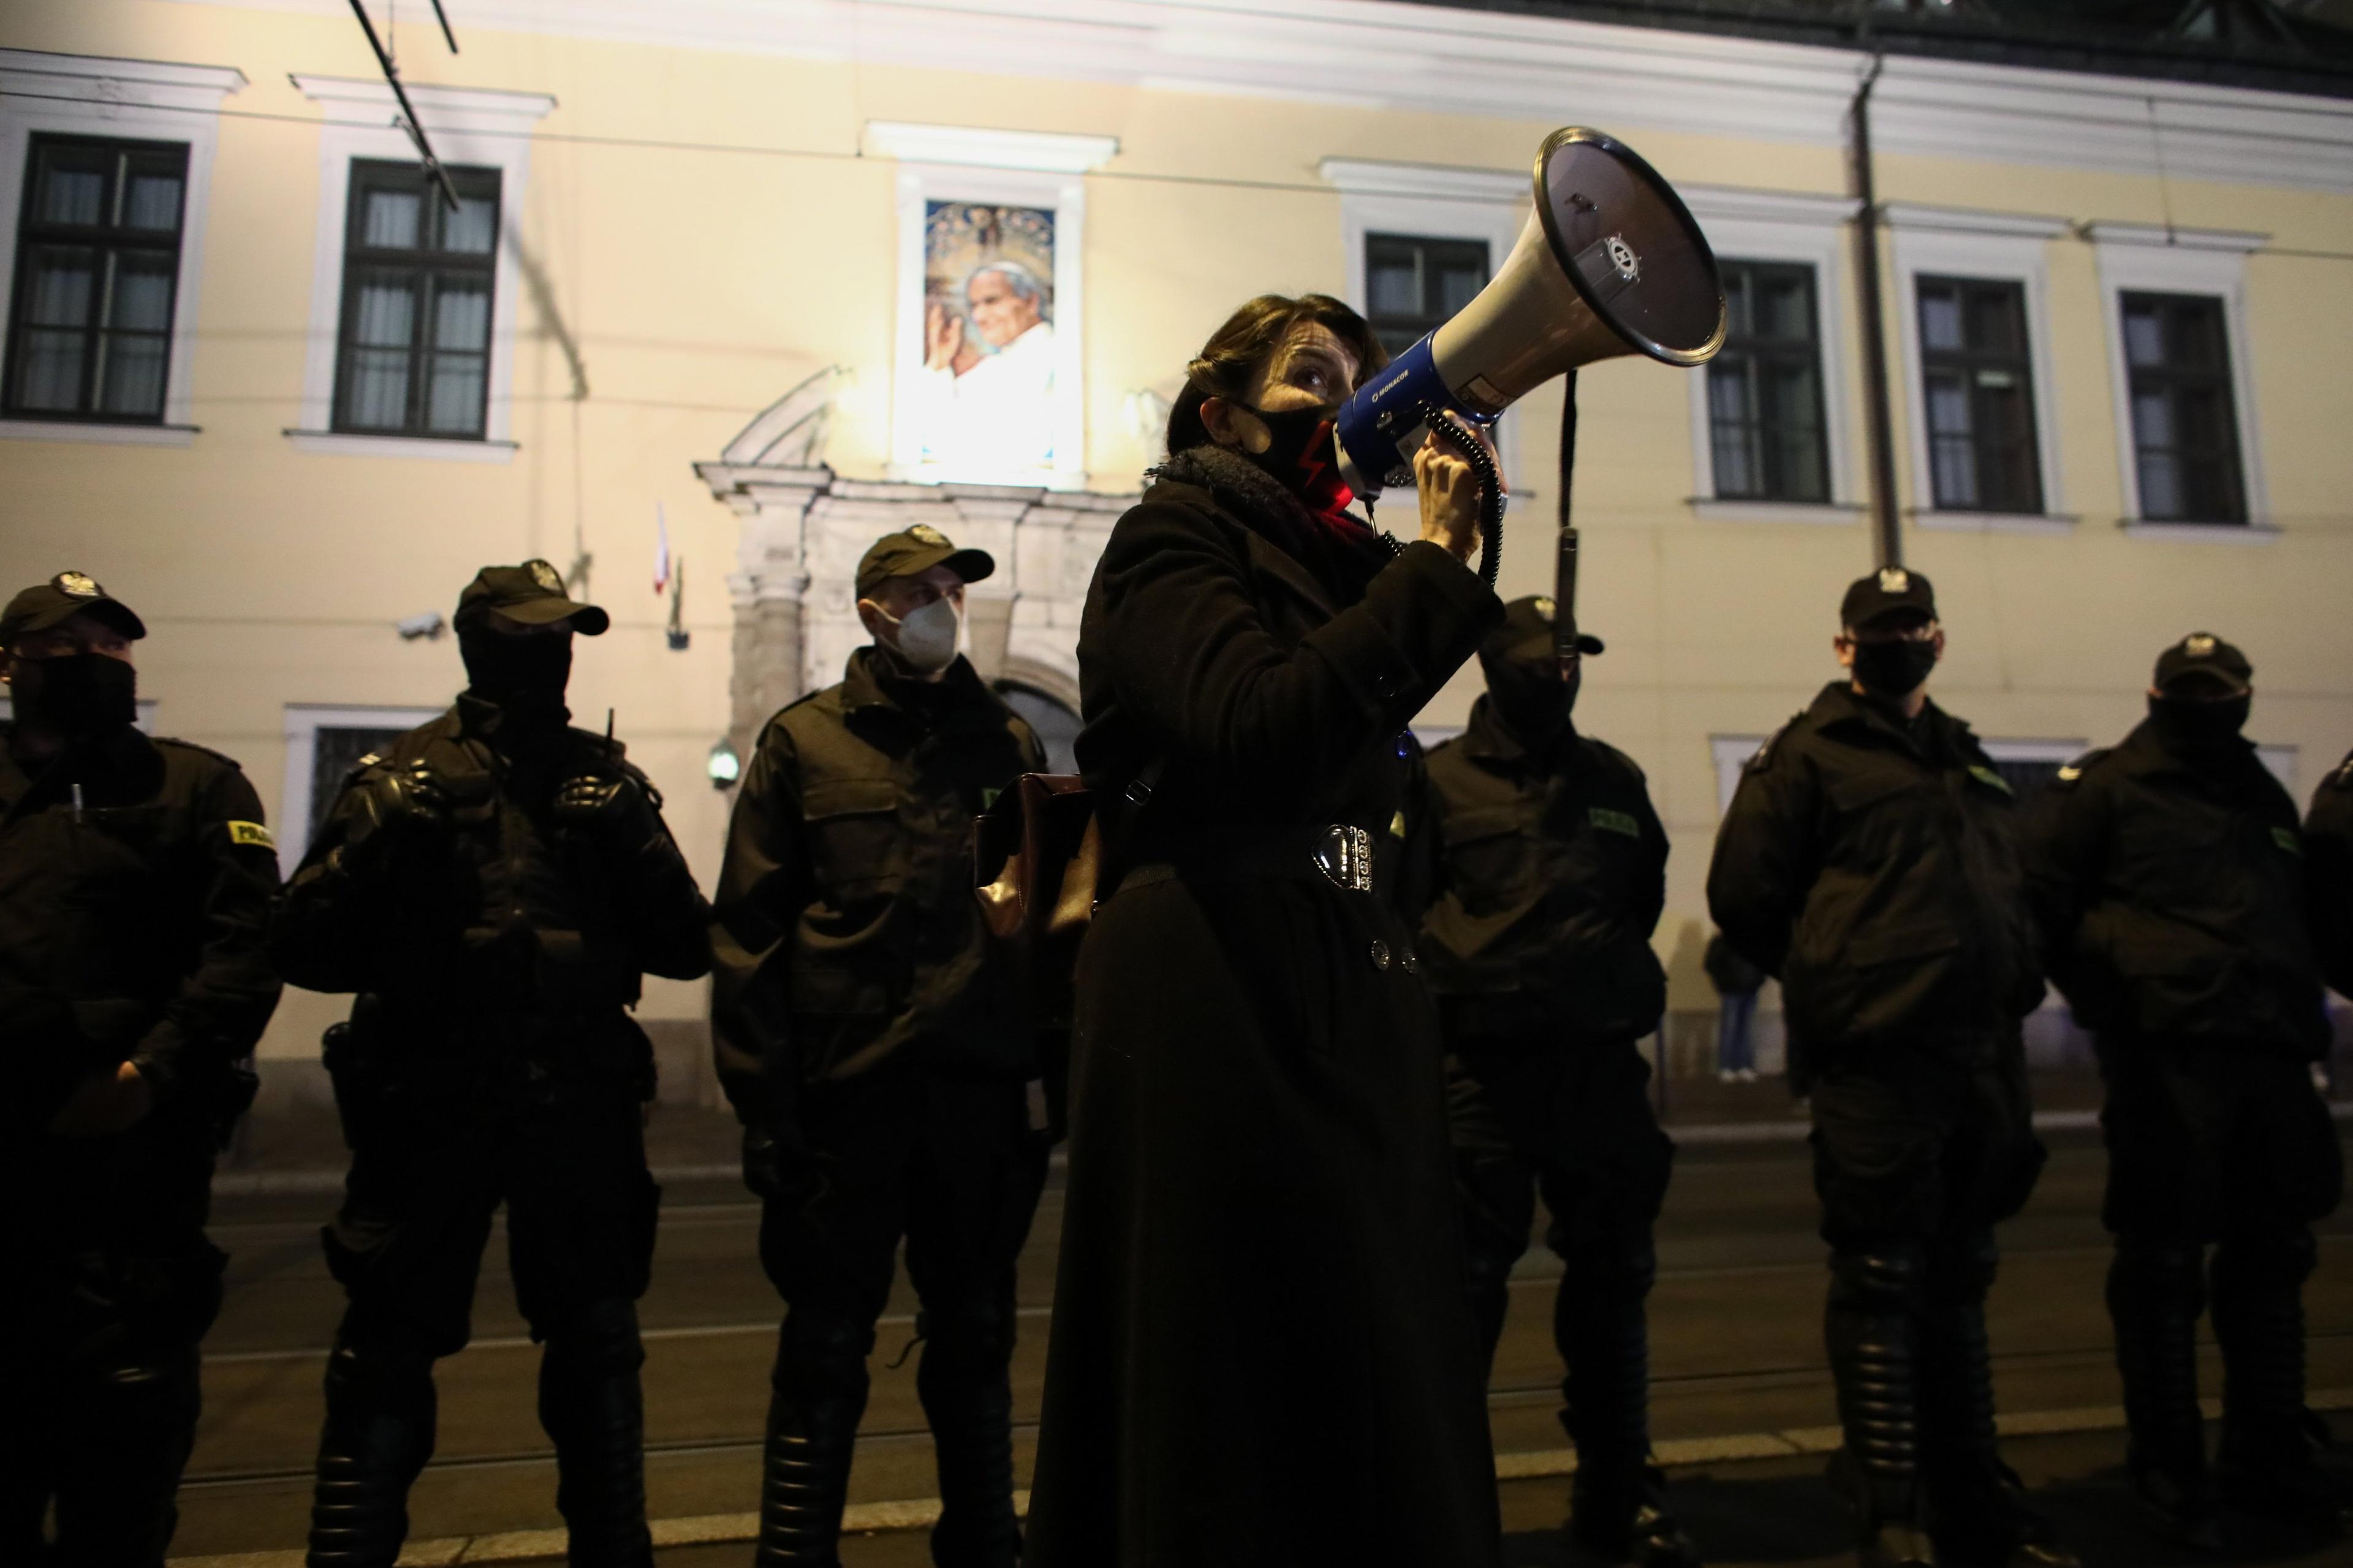 Krakowska kuria z portretem Jana Pawła II otoczona przz policje. Na pierwszym planie protetsująca kobieta z megafonem